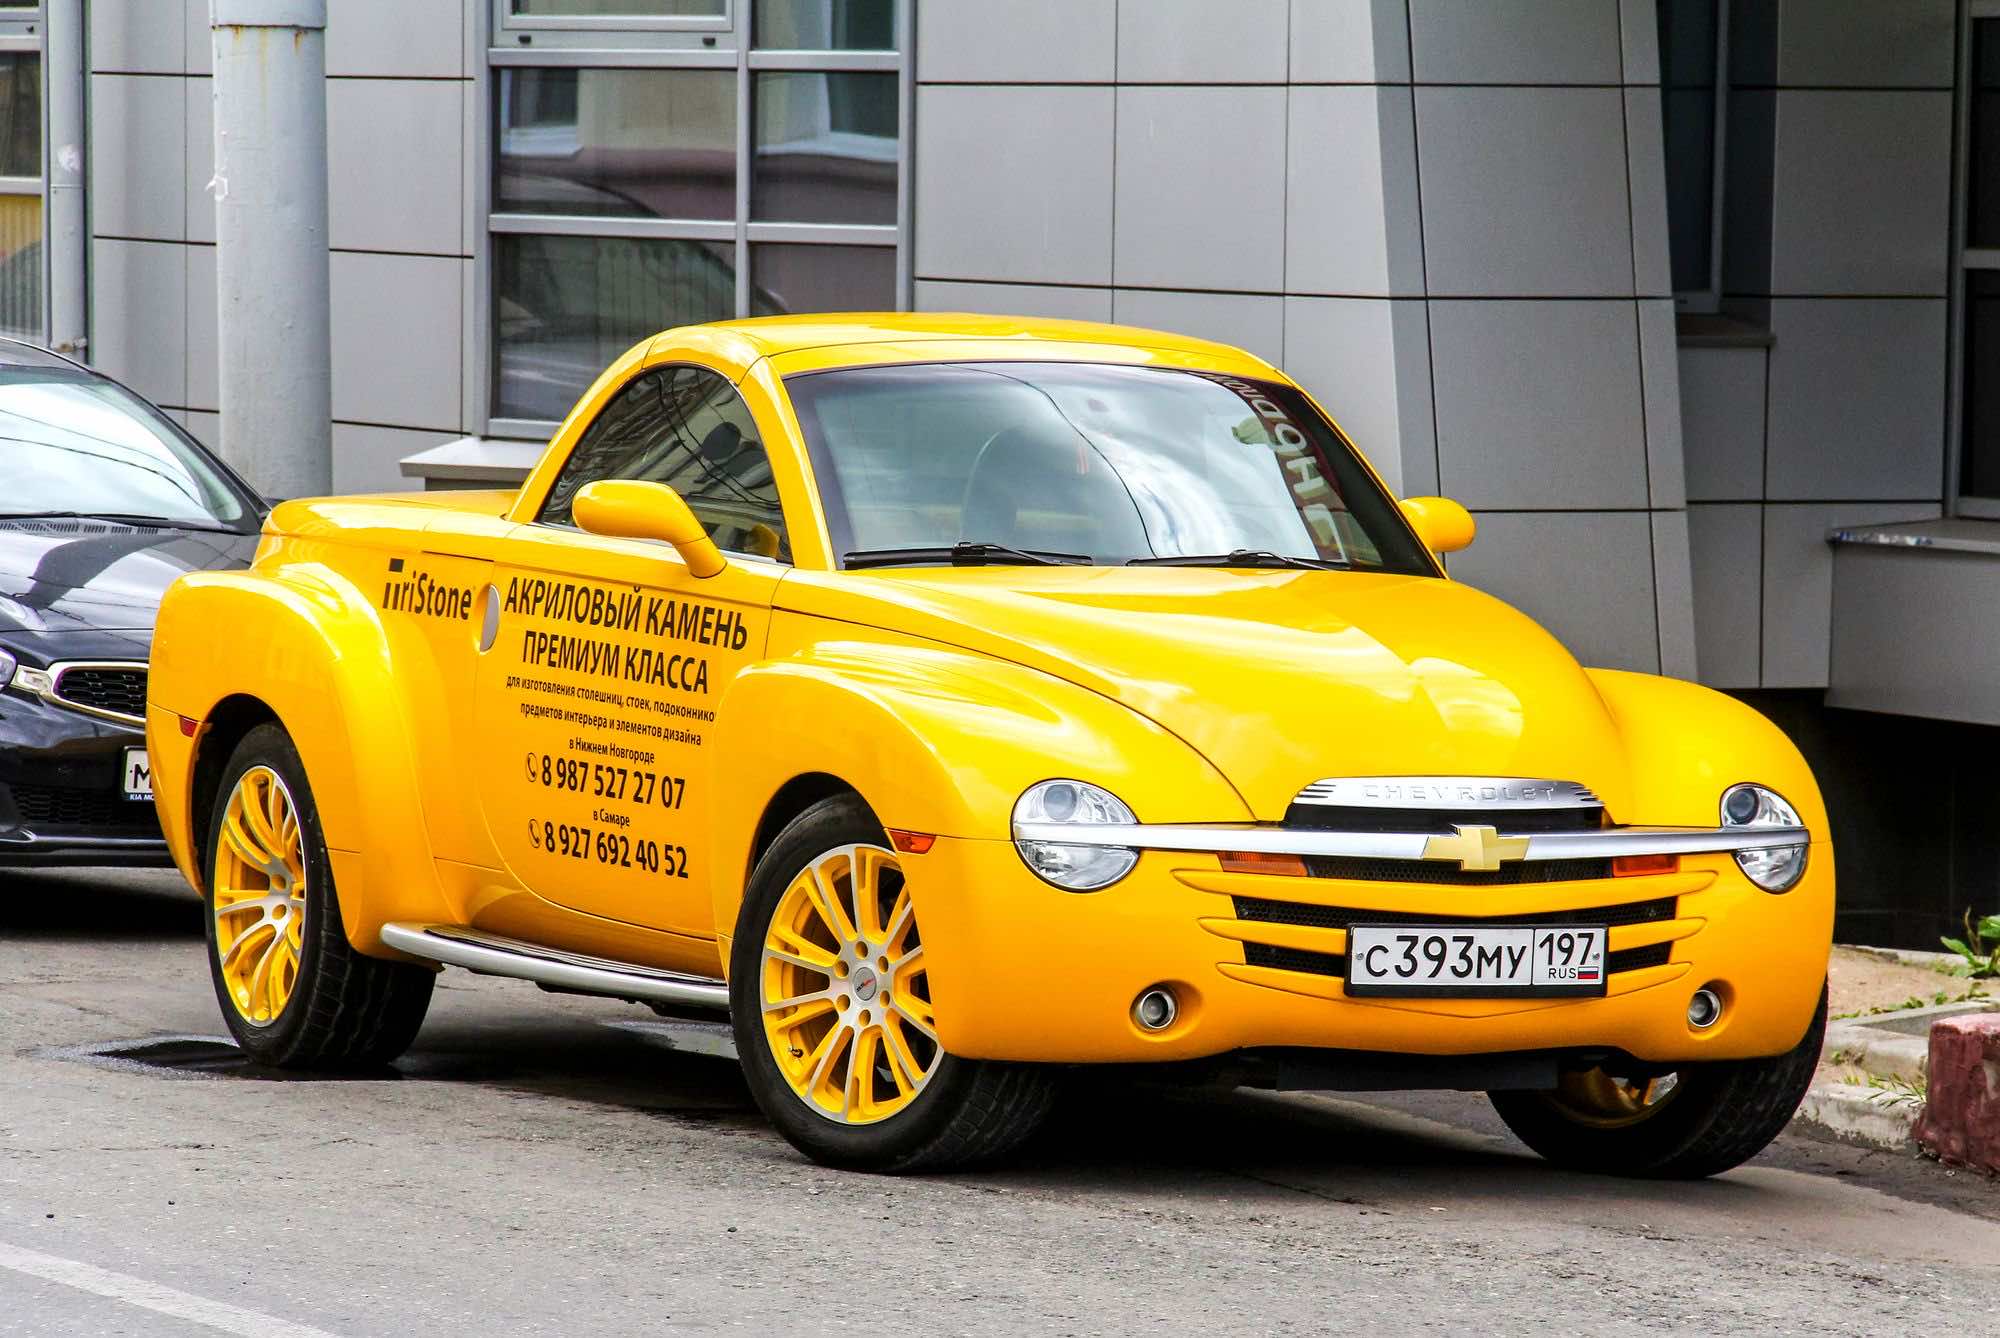 κίτρινο αυτοκίνητο παρκαρισμένο στο δρόμο